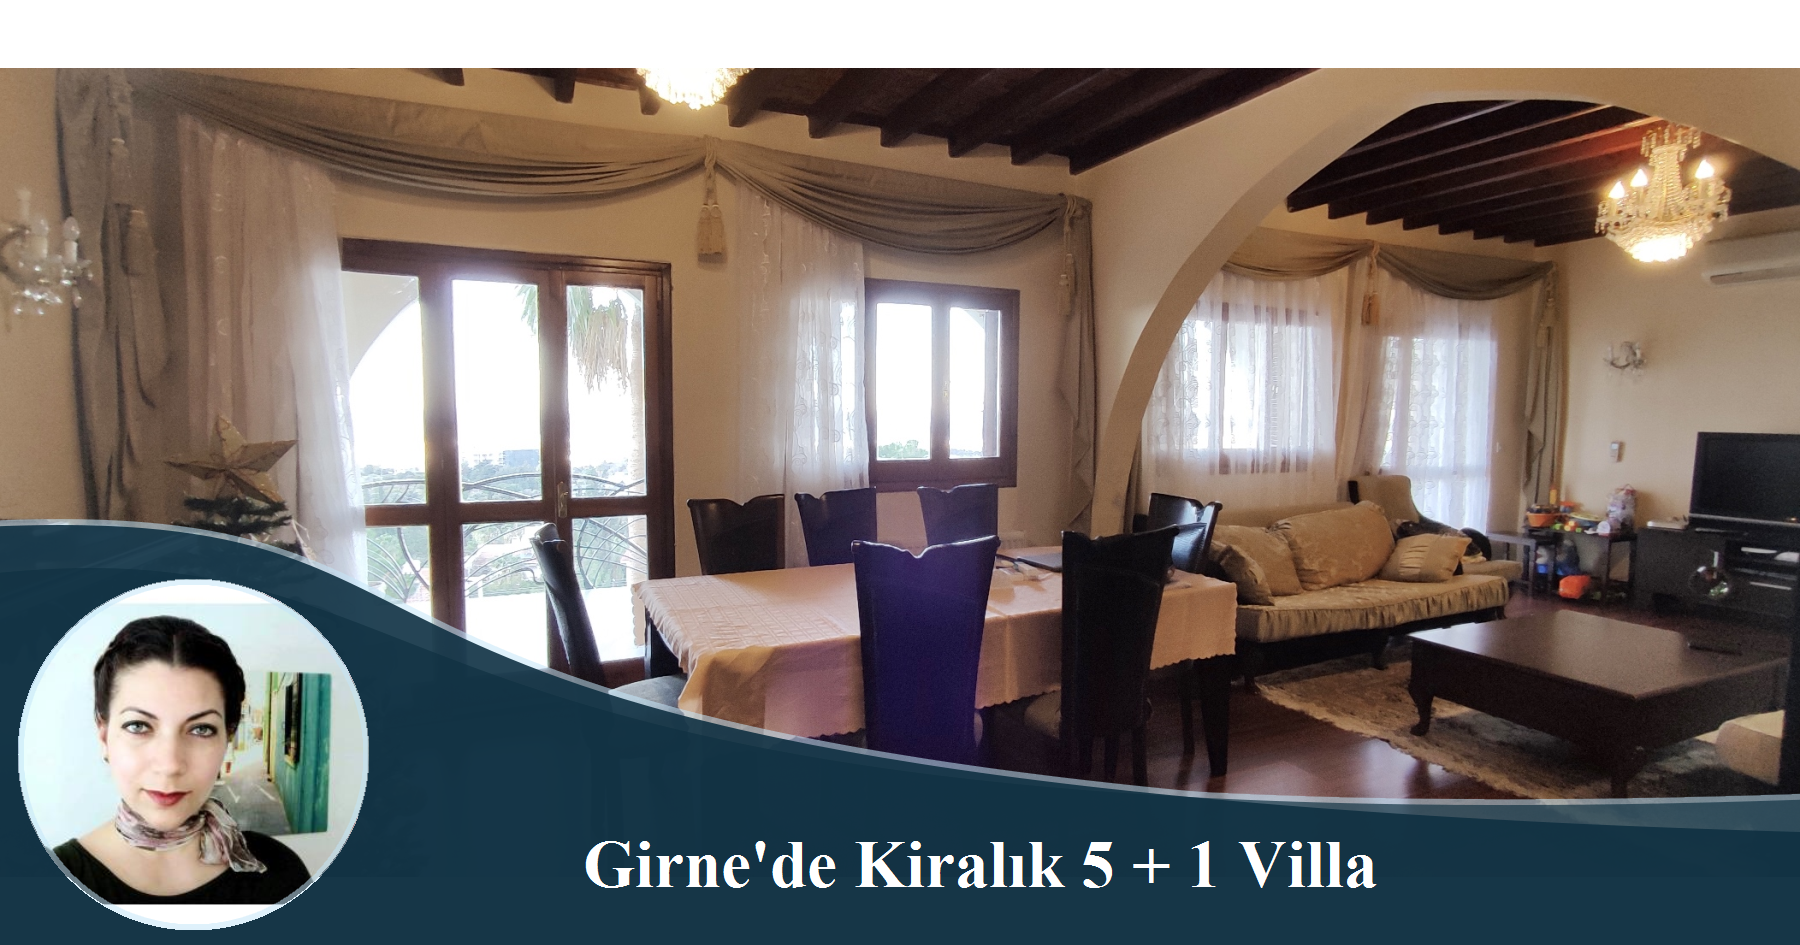 Karmi'de Eşsiz Deniz Manzarasına Hakim Havuzlu 5+1 Kiralık Villa!  + ', KKTC Emlak, Kıbrıs Emlak'